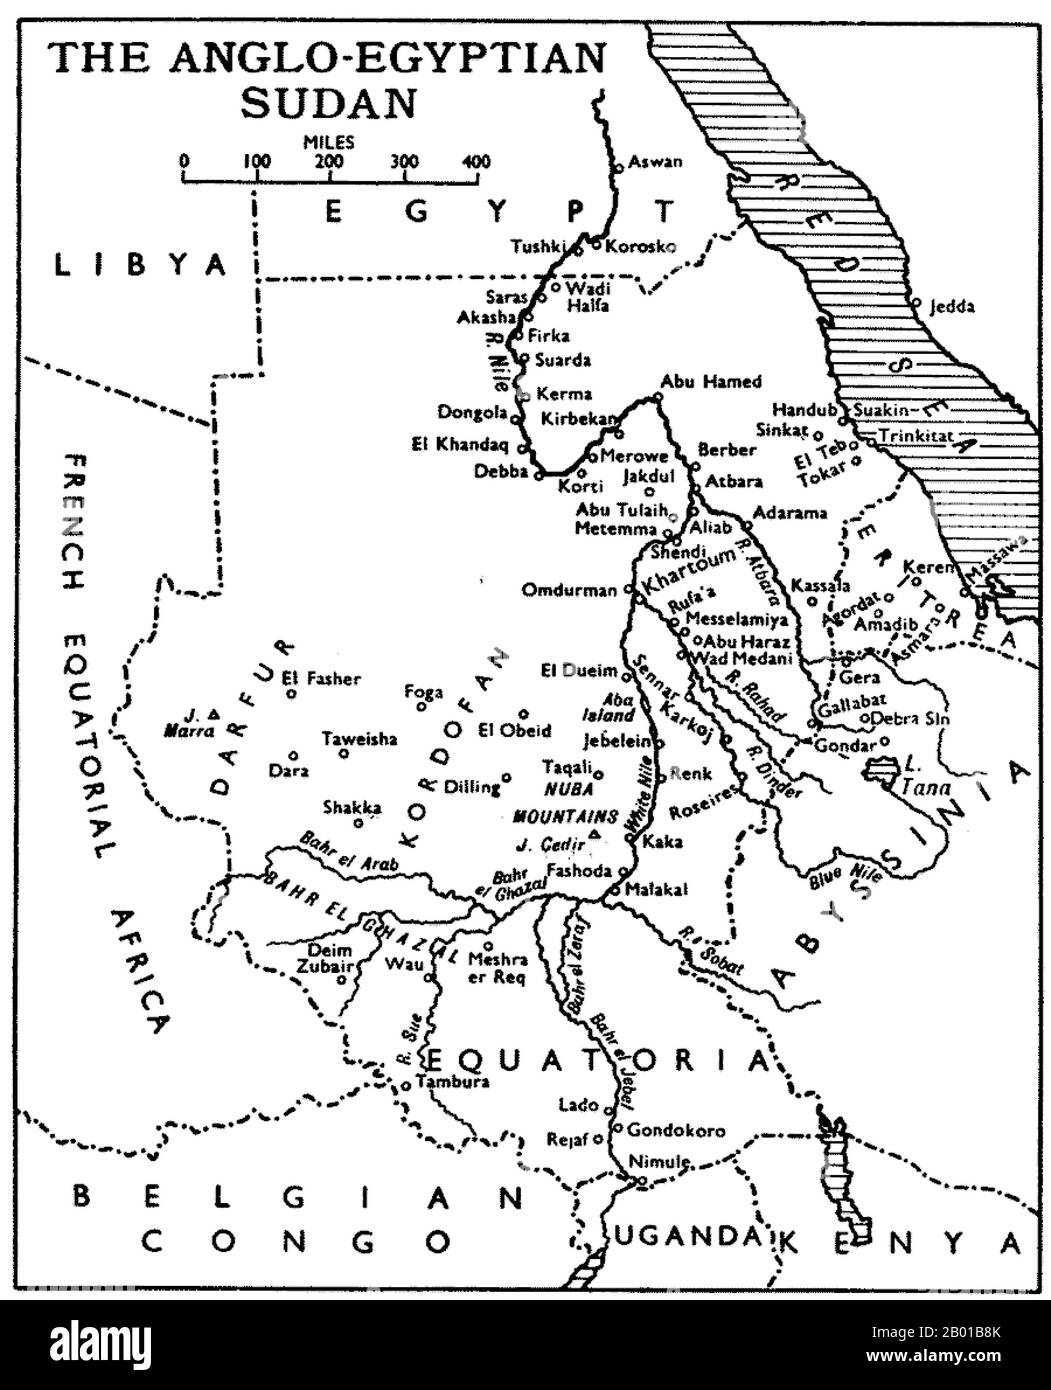 Sudan: Karte des anglo-ägyptischen Sudan, die die Provinz Equatoria zeigt - jetzt etwa gleichbestimmt mit dem Südsudan, Ende des 19.. Jahrhunderts. Der Begriff Anglo-ägyptischer Sudan bezieht sich auf den Zeitraum zwischen 1891 und 1956, als der Sudan als Kondominium von Ägypten und dem Vereinigten Königreich verwaltet wurde. Der Sudan (bestehend aus dem heutigen Sudan und dem Südsudan) wurde de jure legal zwischen Ägypten und dem britischen Imperium geteilt, wurde aber de facto von letzterem kontrolliert, wobei Ägypten in Wirklichkeit nur begrenzte lokale Macht genießt, da Ägypten selbst unter zunehmenden britischen Einfluss fiel. Stockfoto